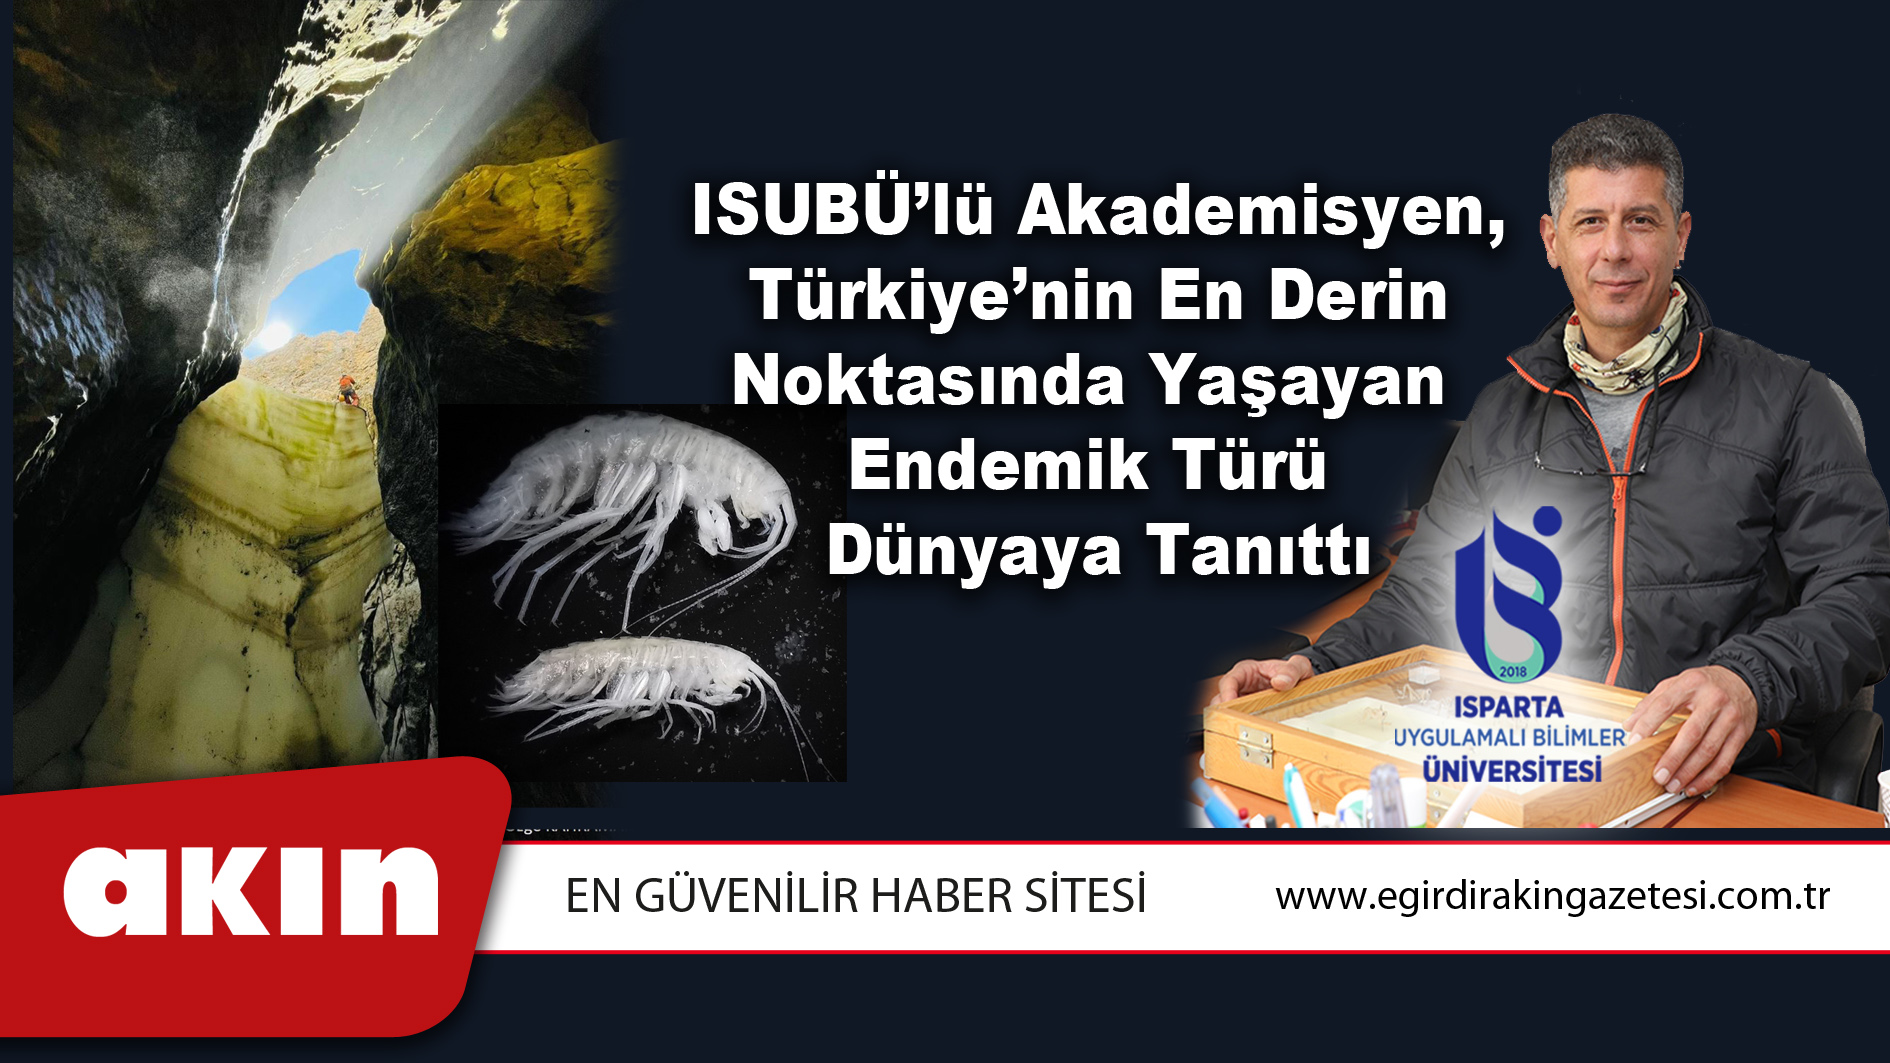 ISUBÜ’lü Akademisyen, Türkiye’nin En Derin Noktasında Yaşayan Endemik Türü Dünyaya Tanıttı